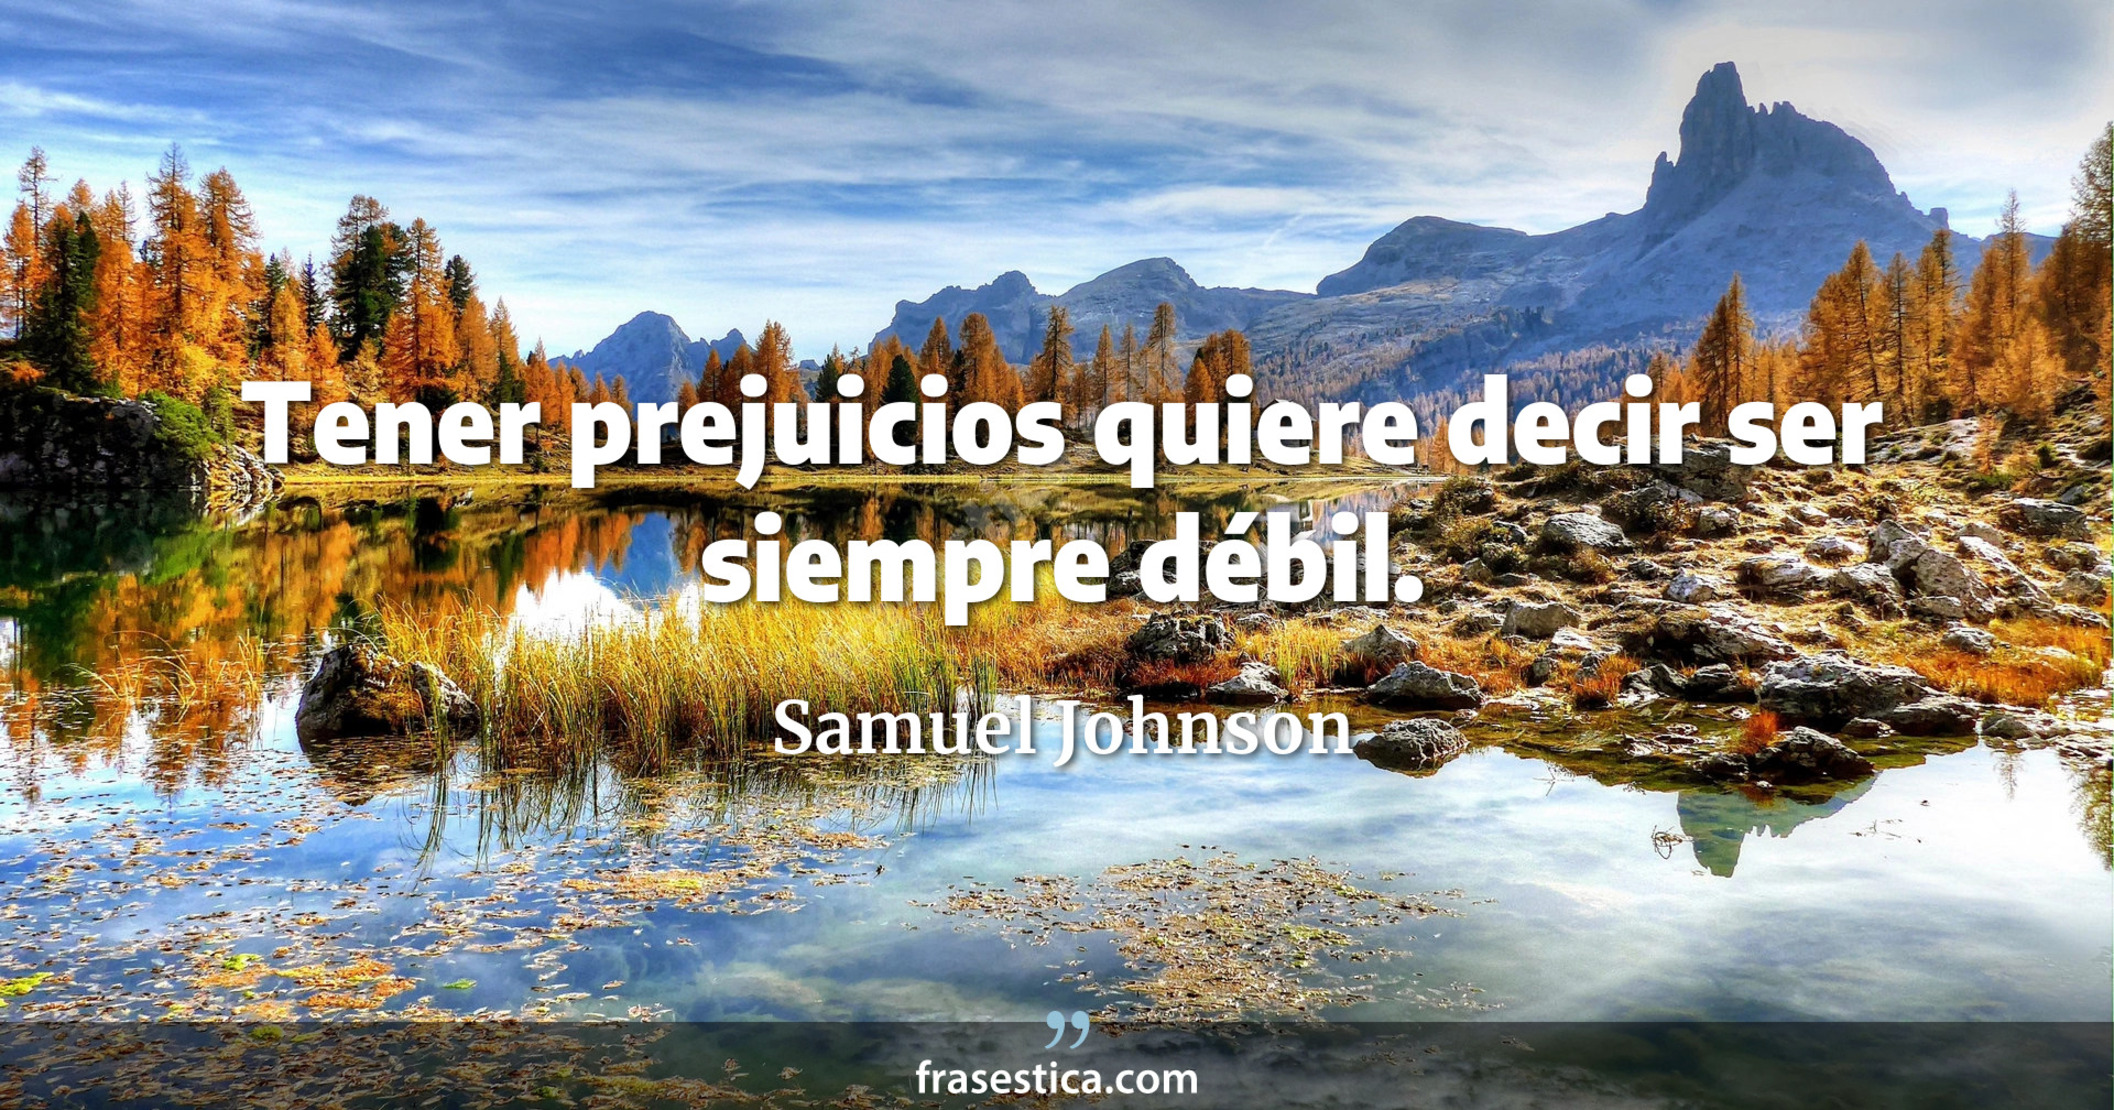 Tener prejuicios quiere decir ser siempre débil. - Samuel Johnson